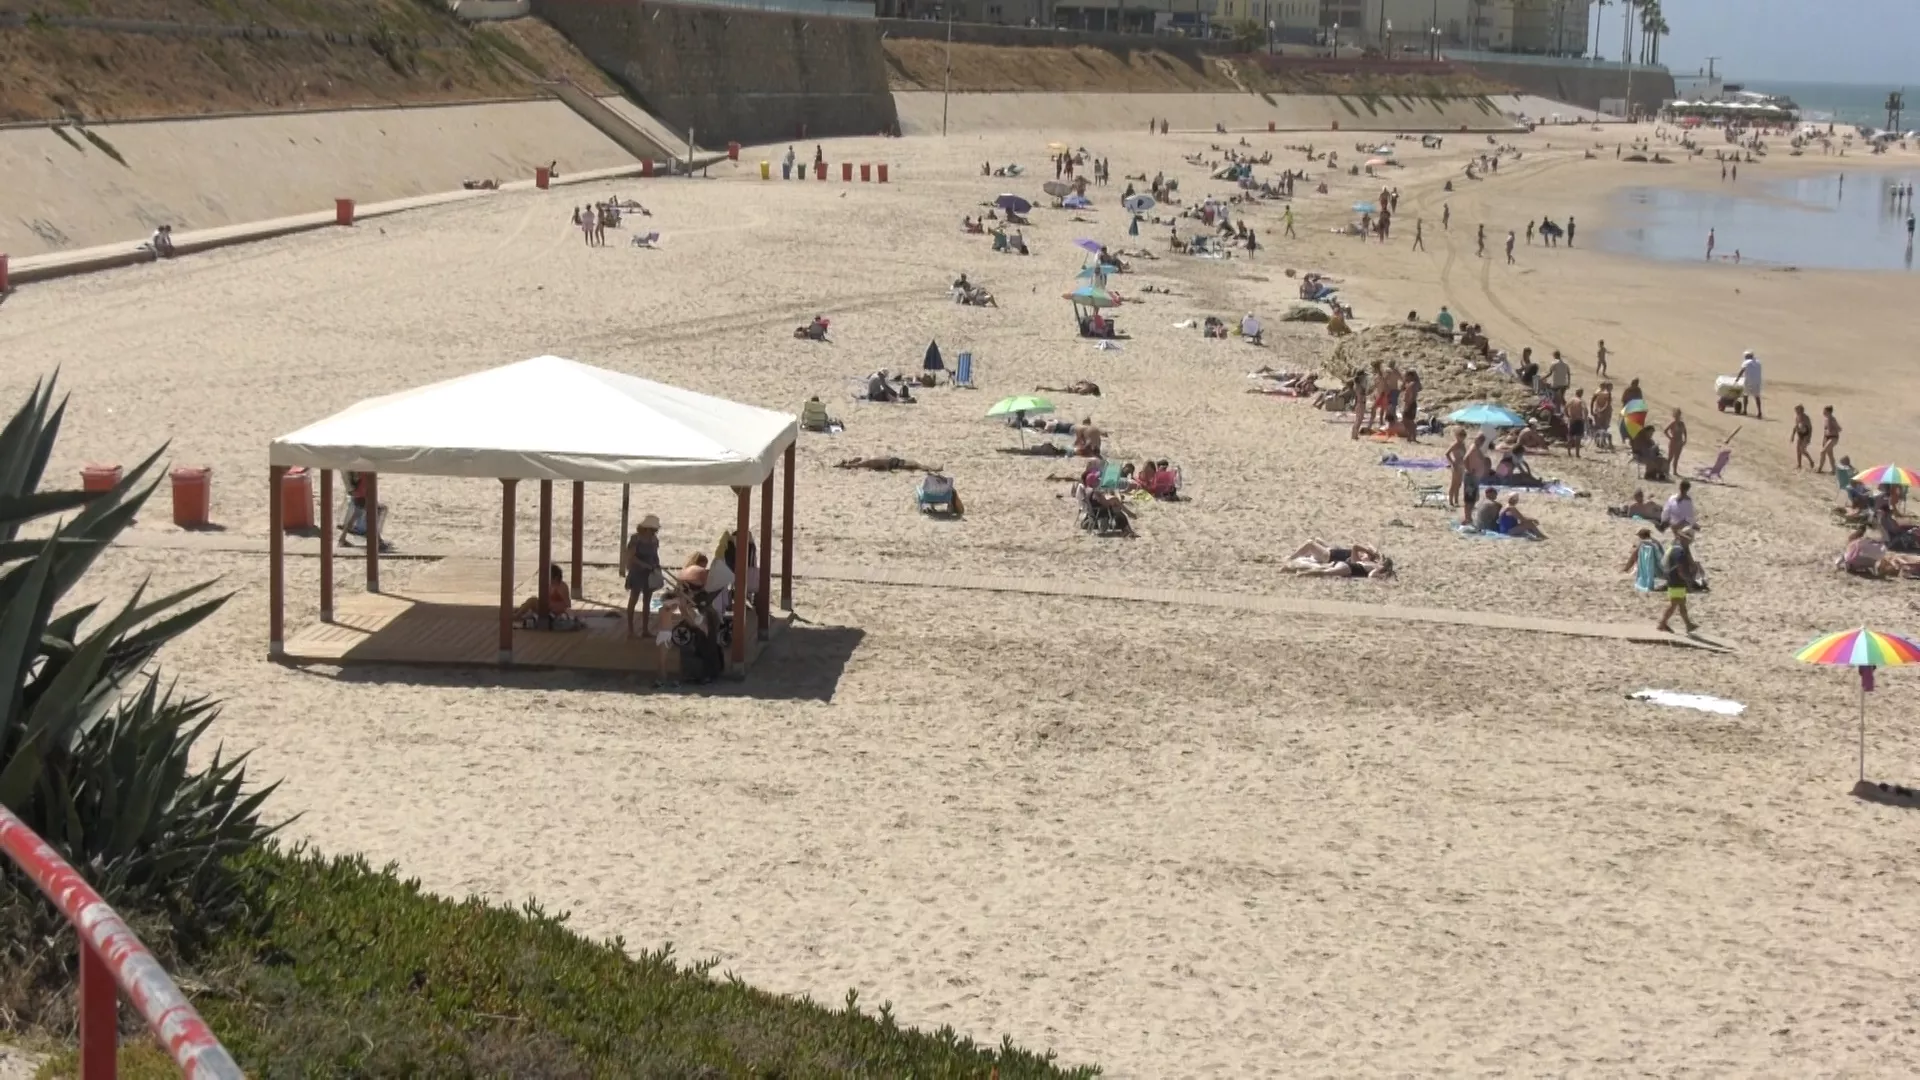 Zona adaptada en la playa Santa María del Mar